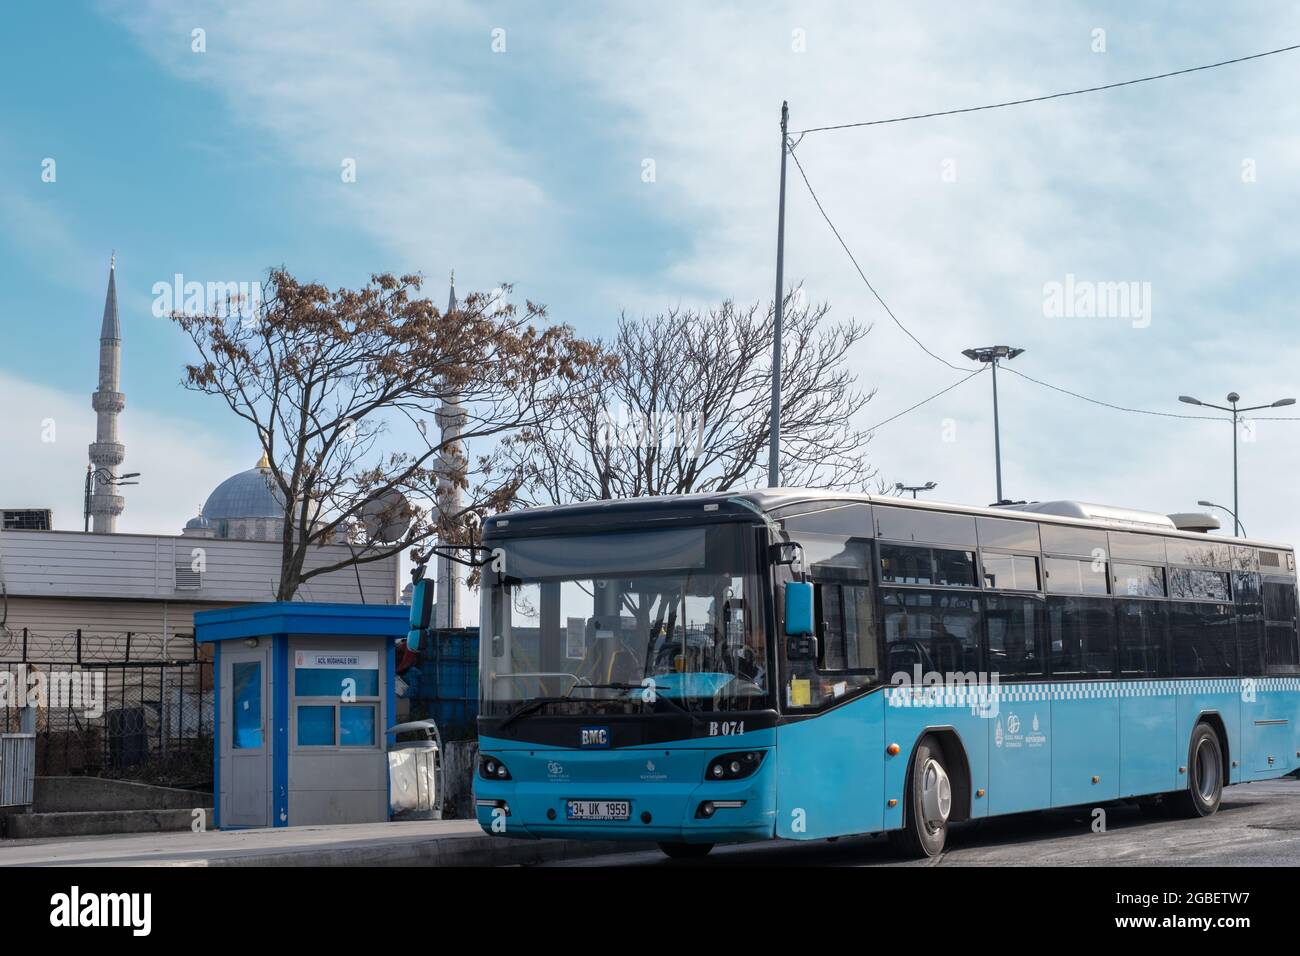 Eminonu, Istanbul, Turchia - 02.18.2021: Primo piano di un autobus blu comunale parcheggiato in deposito autobus di fronte alla moschea minareti e stazione con copia spac Foto Stock